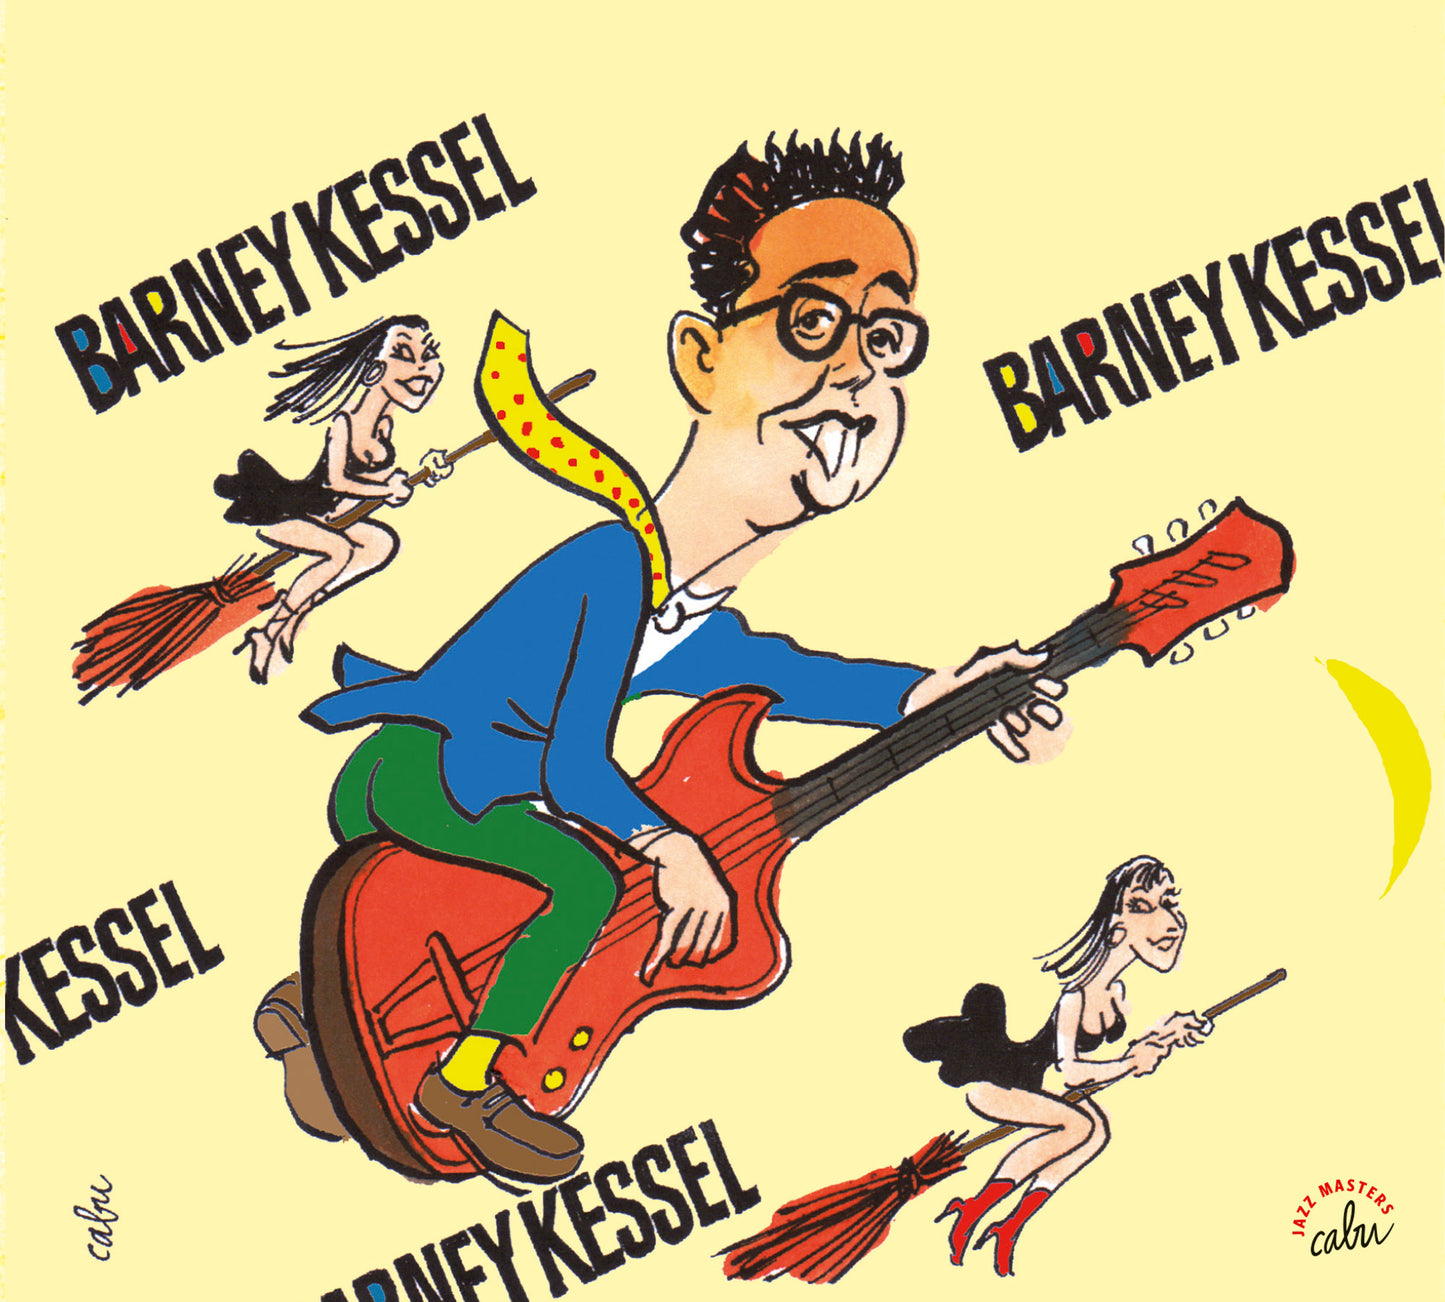 Barney Kessel by Cabu